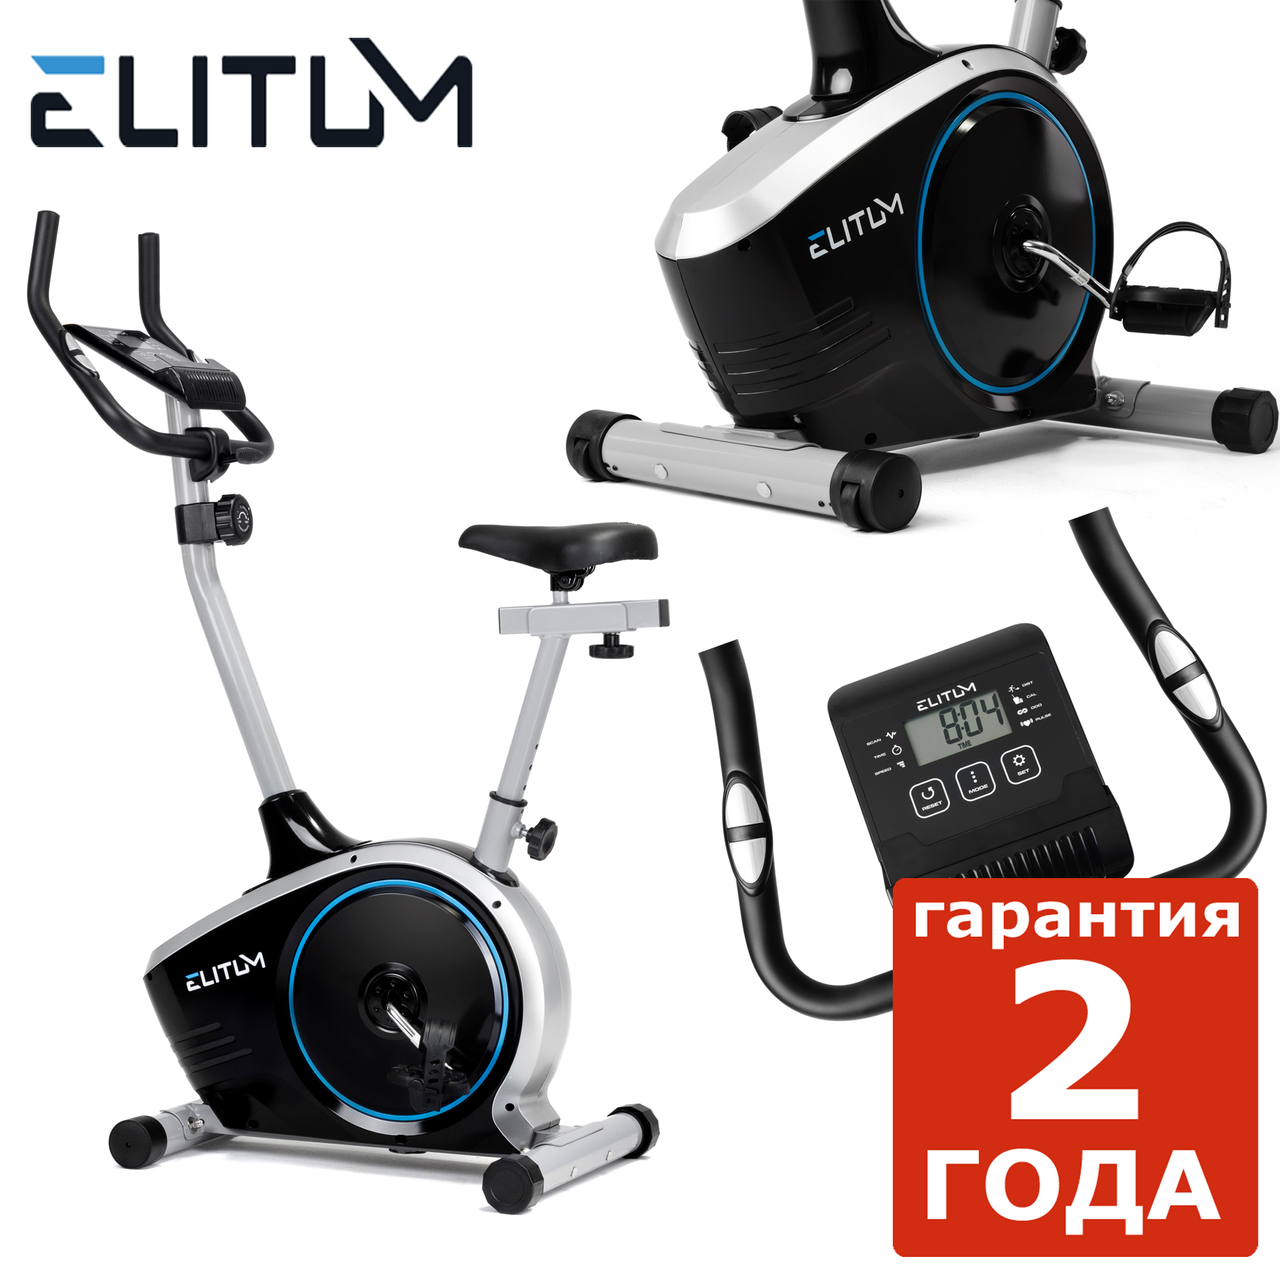 Home велотренажер Elitum RX350 silver,Нове,Електромагнітна,Вага маховика 8 кг, Вертикальний, 47, BA100, 25, 120, 100